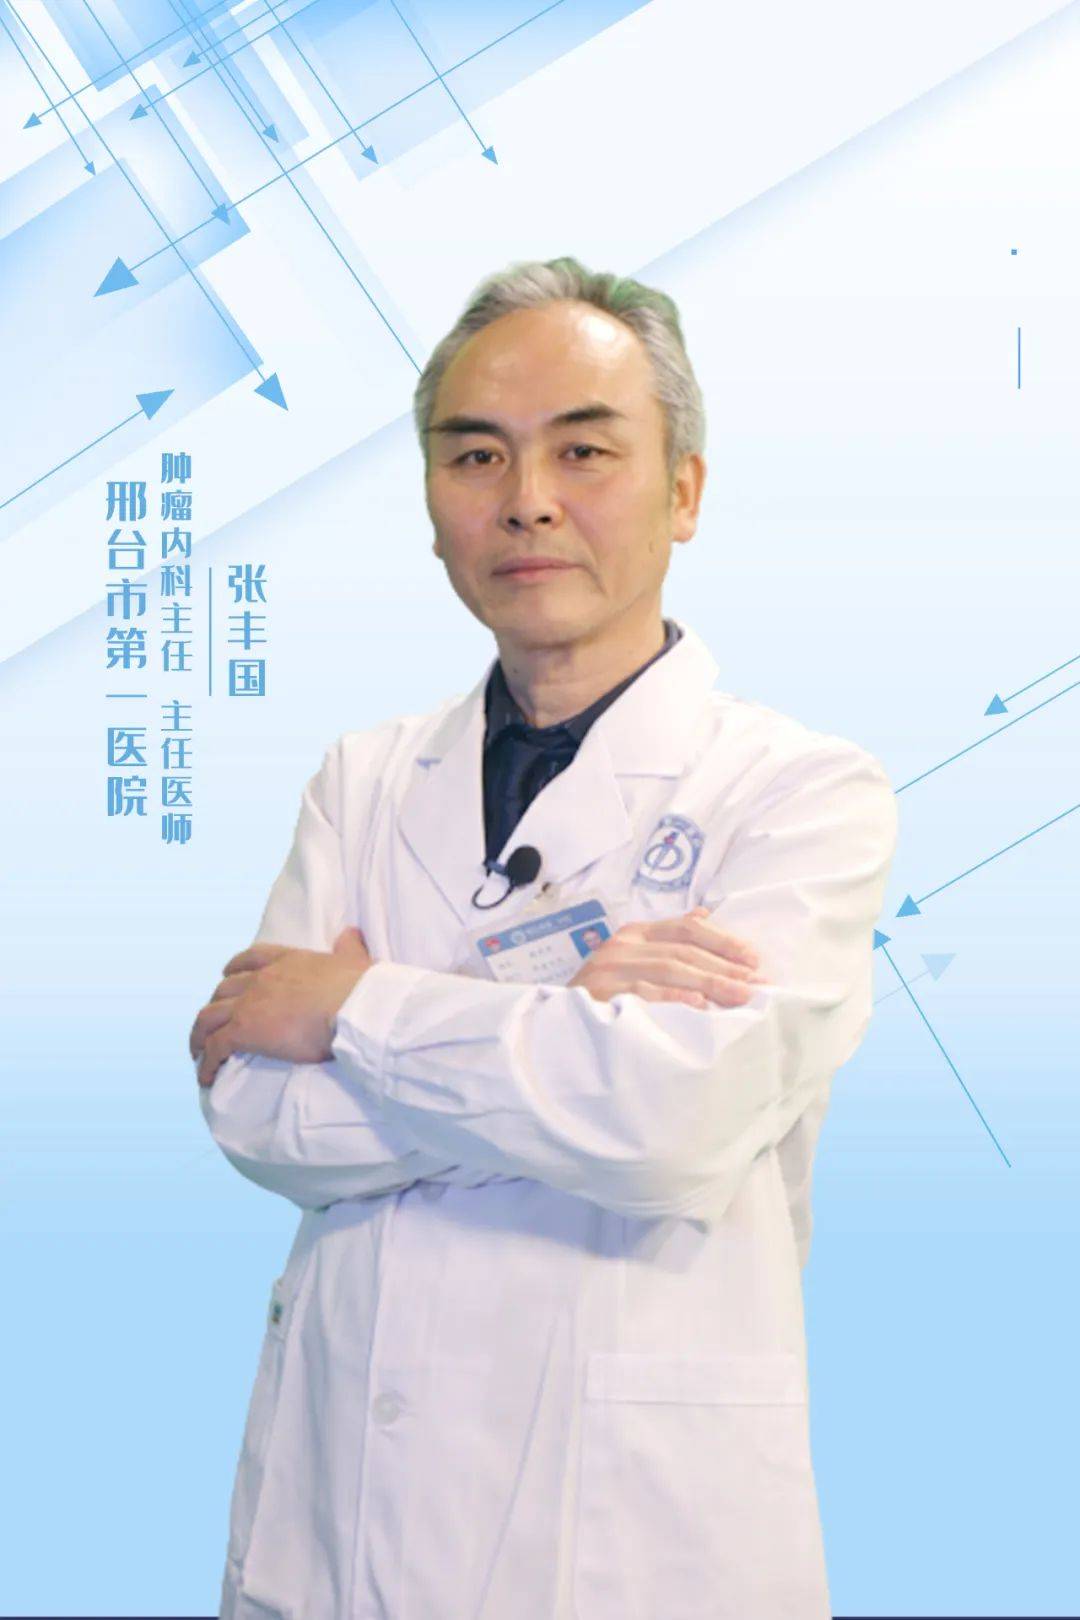 【出诊预告】6月28日邢台市第一医院专家来院坐诊